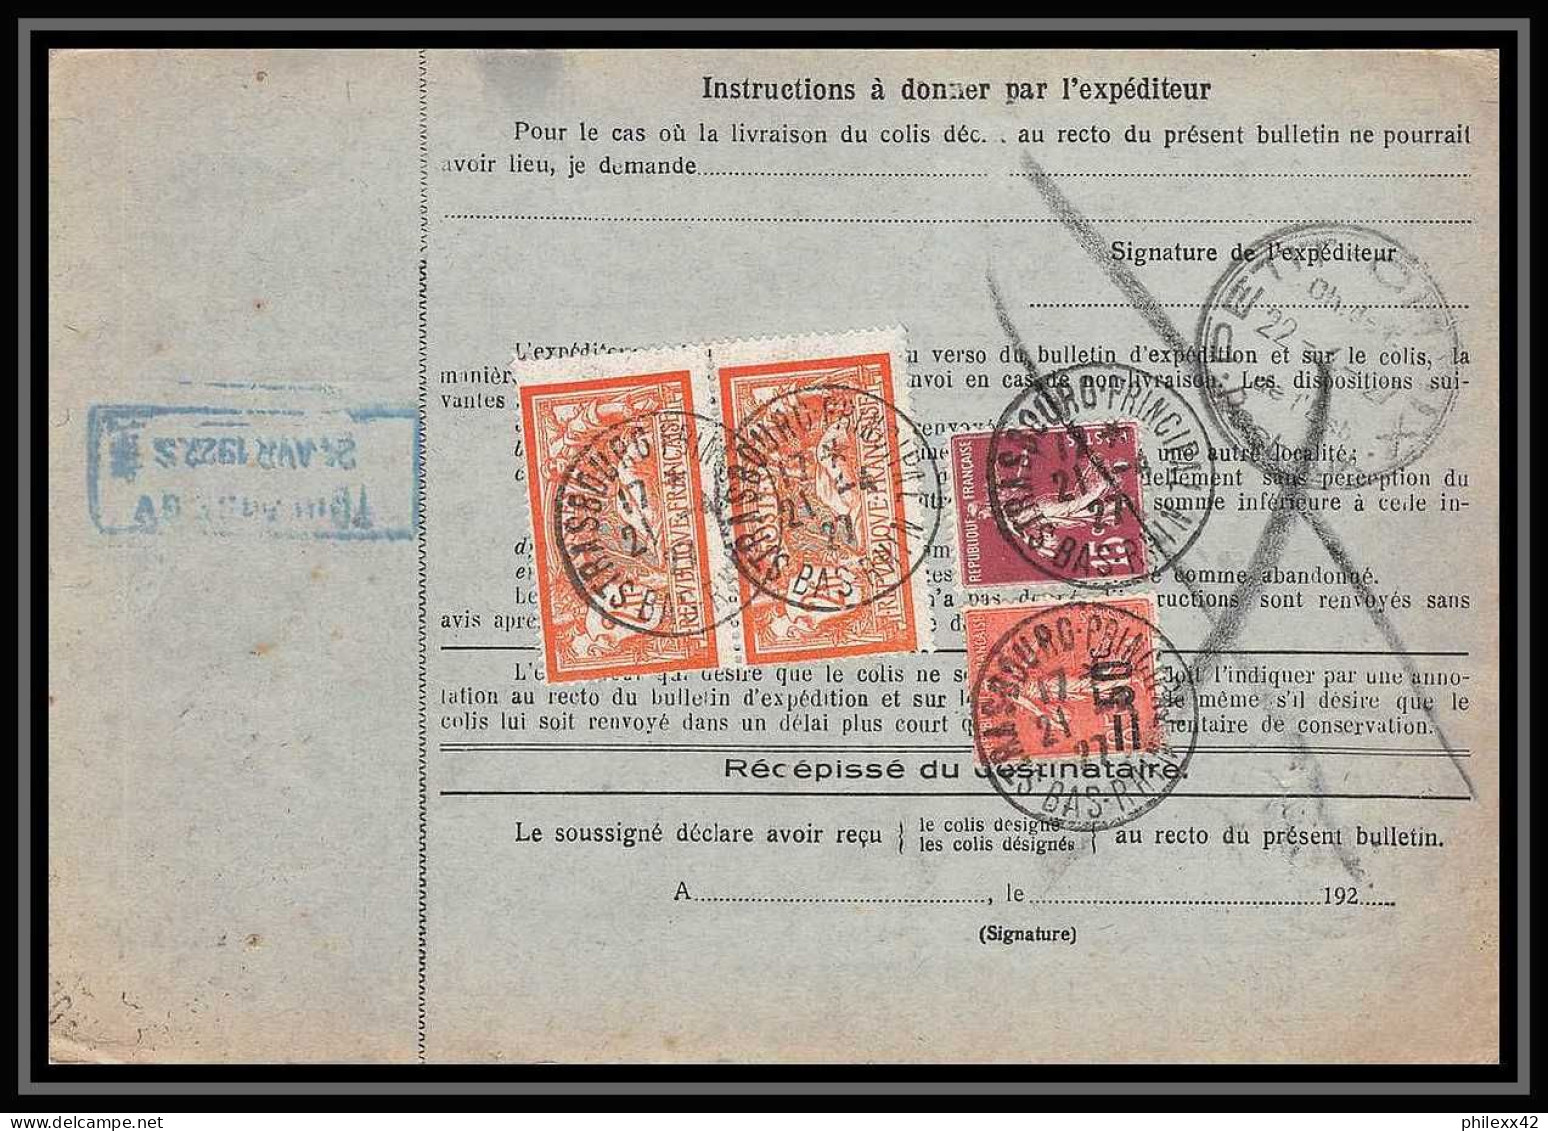 25007 Bulletin D'expédition France Colis Postaux Fiscal Haut Rhin 1927 Strasbourg Semeuse Merson 145 EN GARE - Briefe U. Dokumente